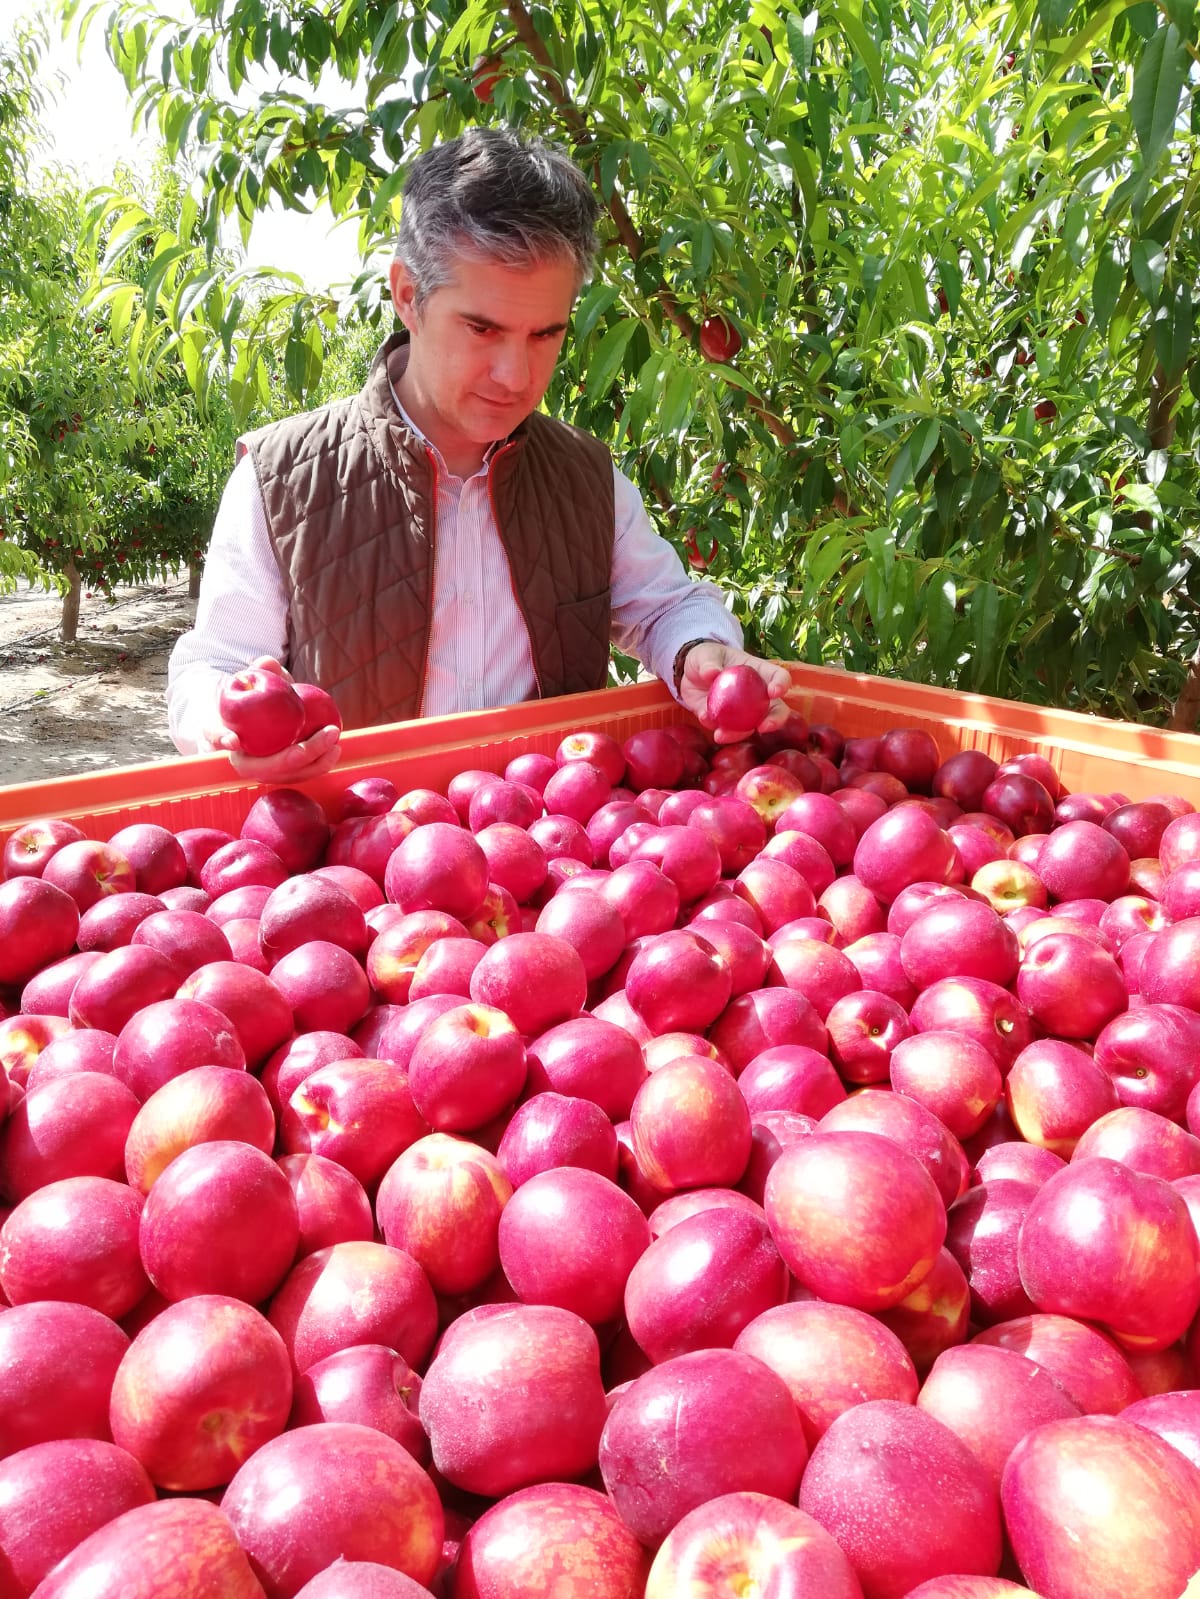 Del Amor asiste a la recolección de nectarinas en una explotación agrícola en Blanca